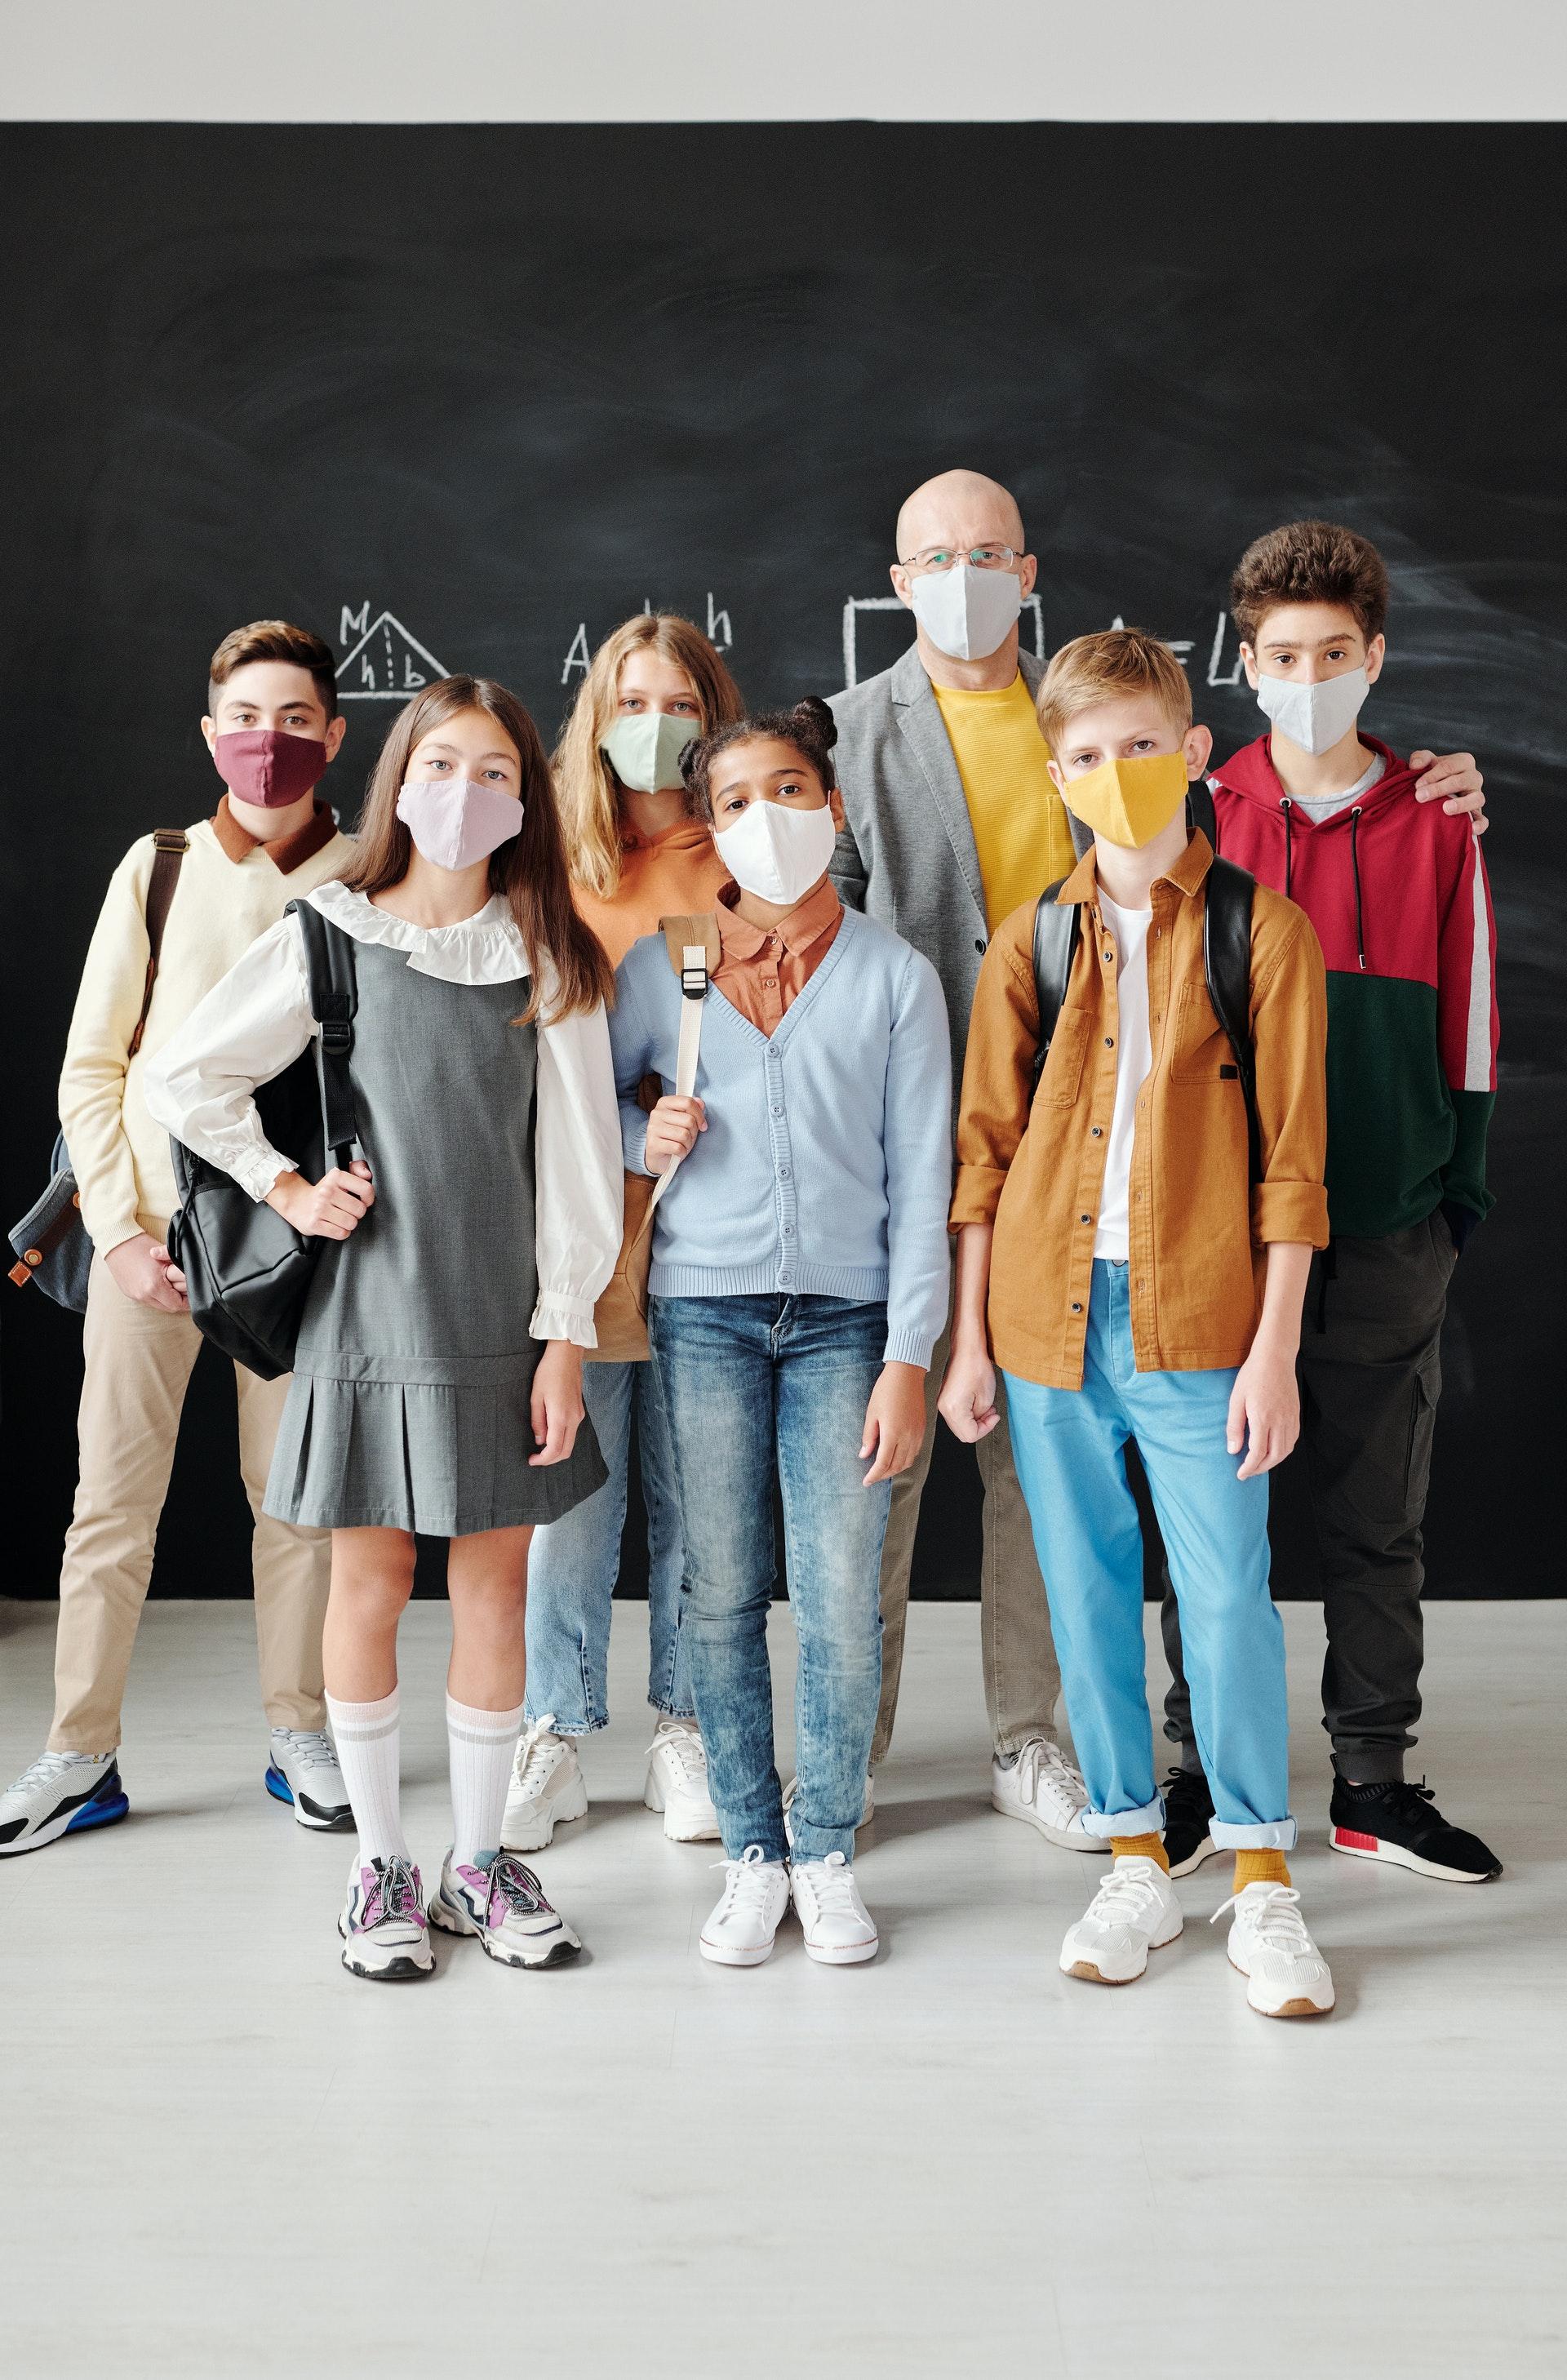 Grupp õpilasi koos õpetajaga tahvli ees - kõigil meditsiinilised maskid ees